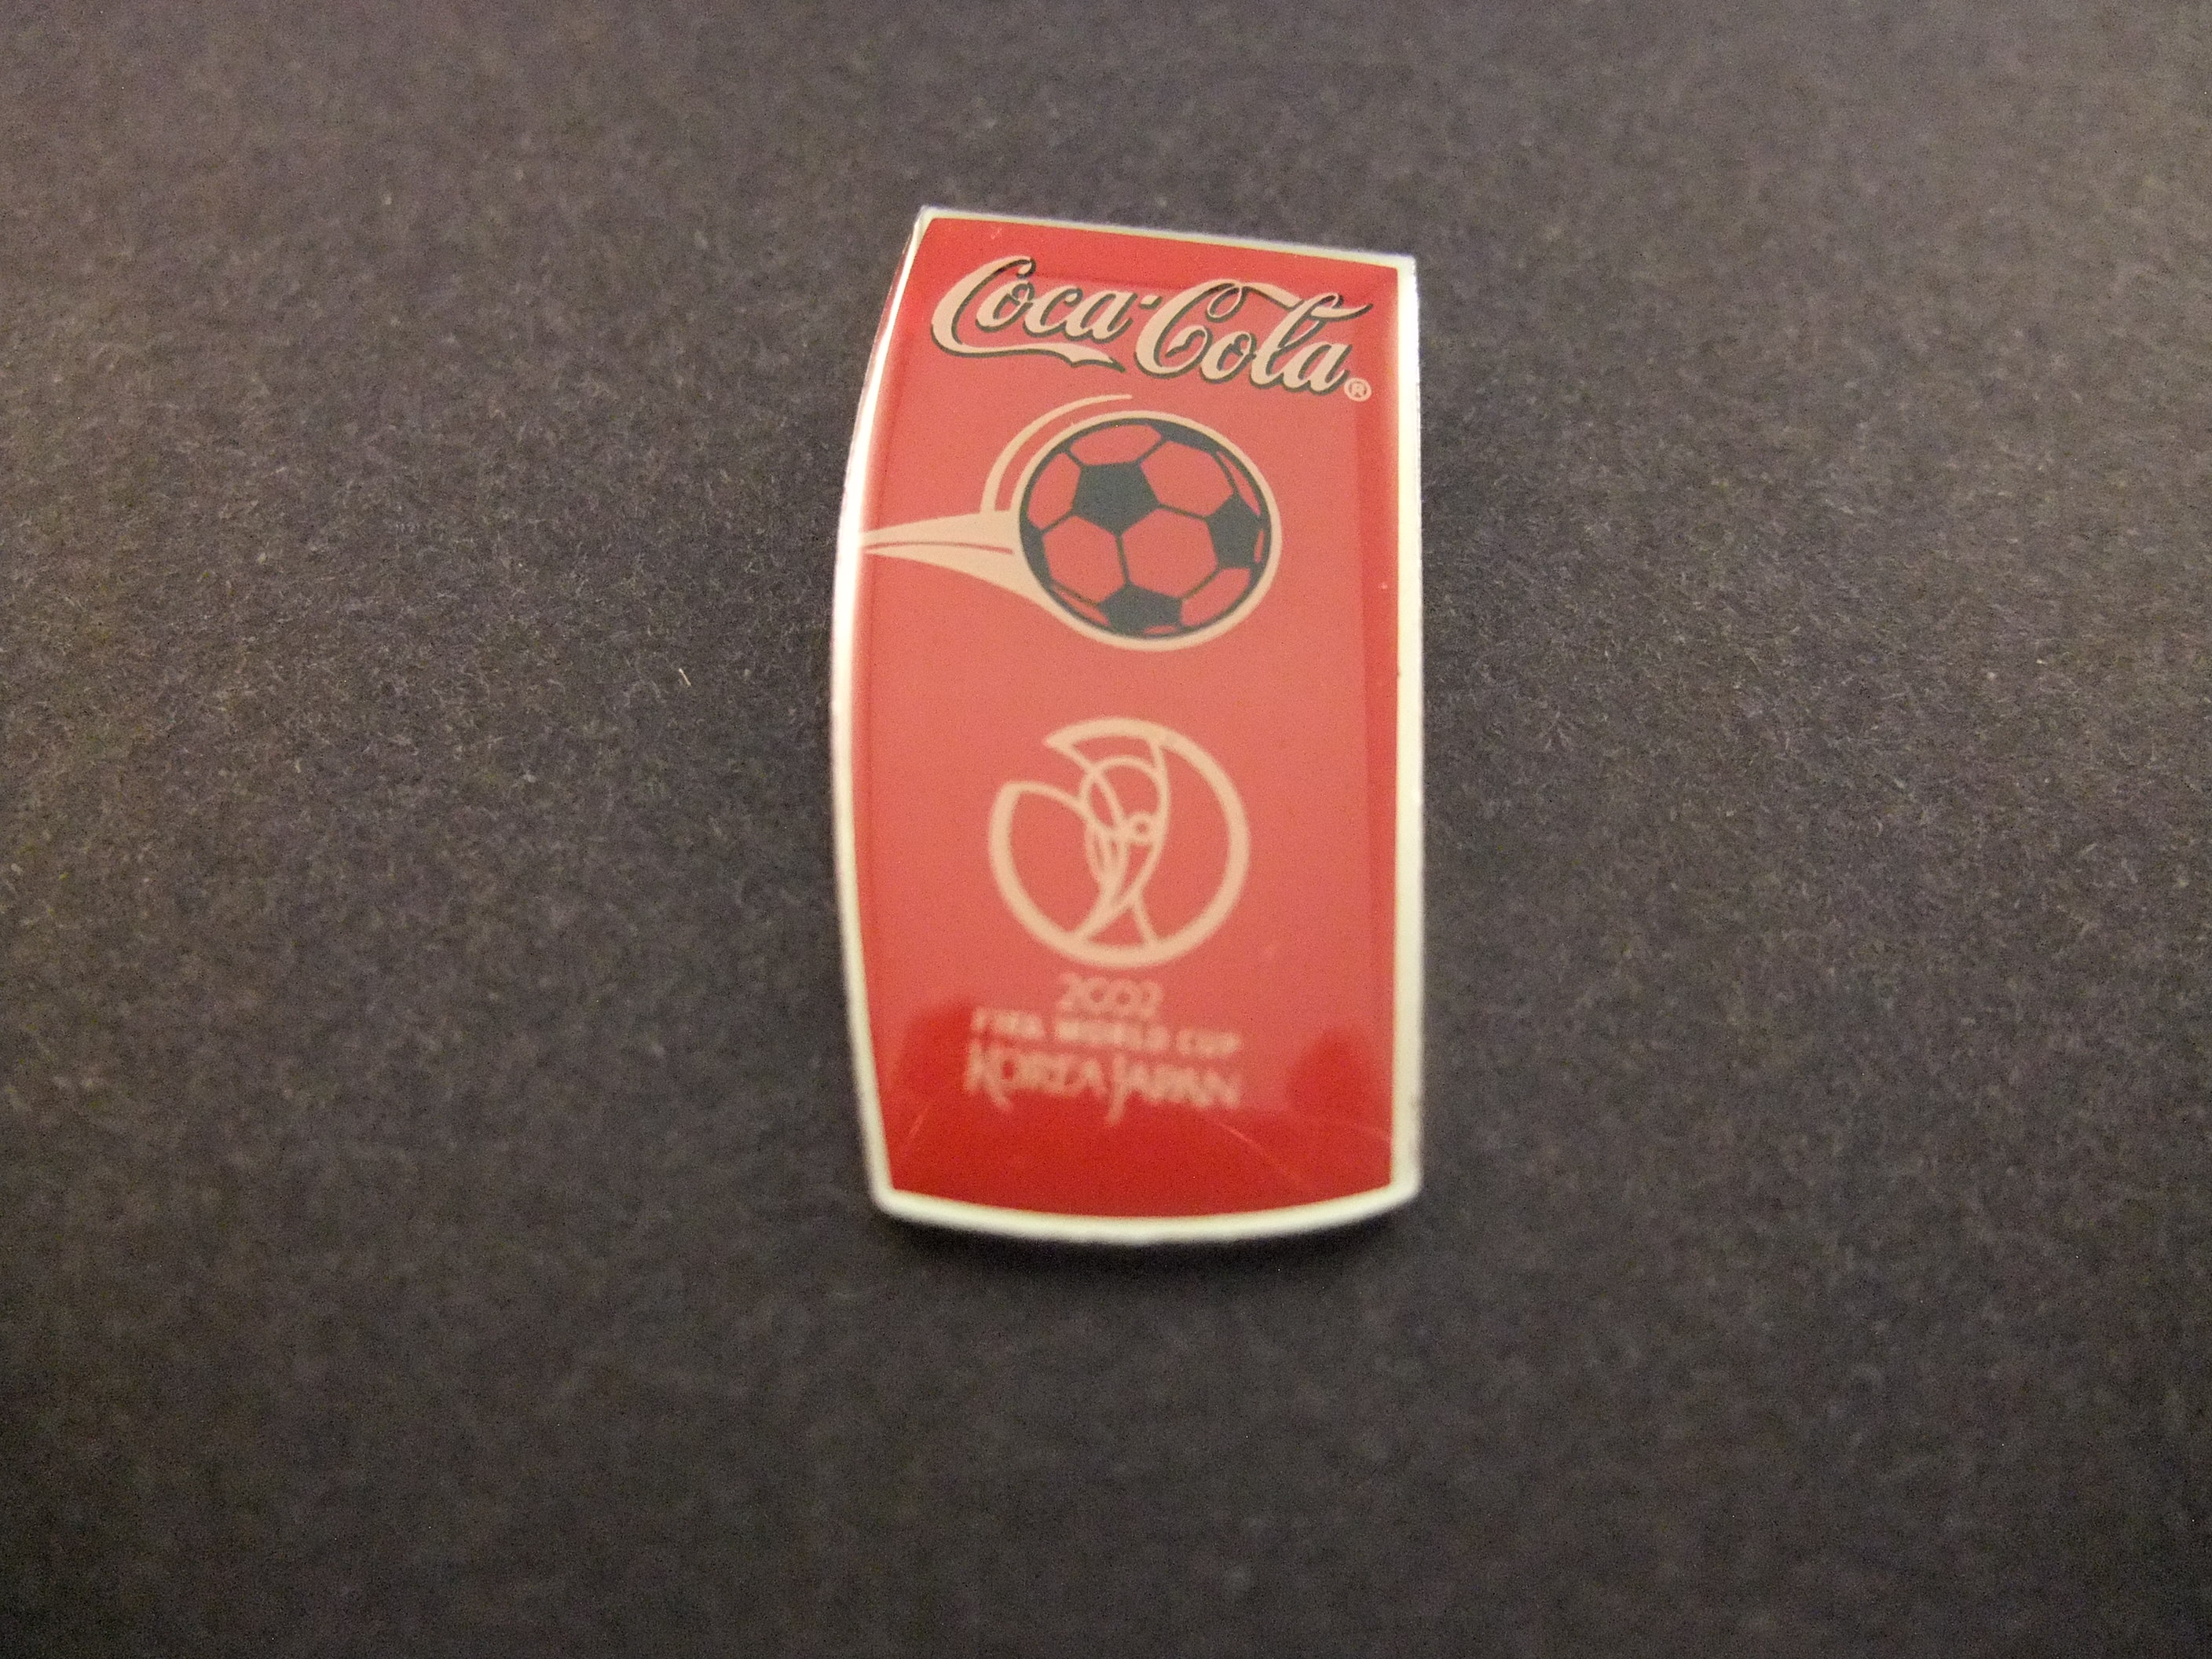 Coca Cola Fifa wordcup voetbal 2002 Korea-Japan